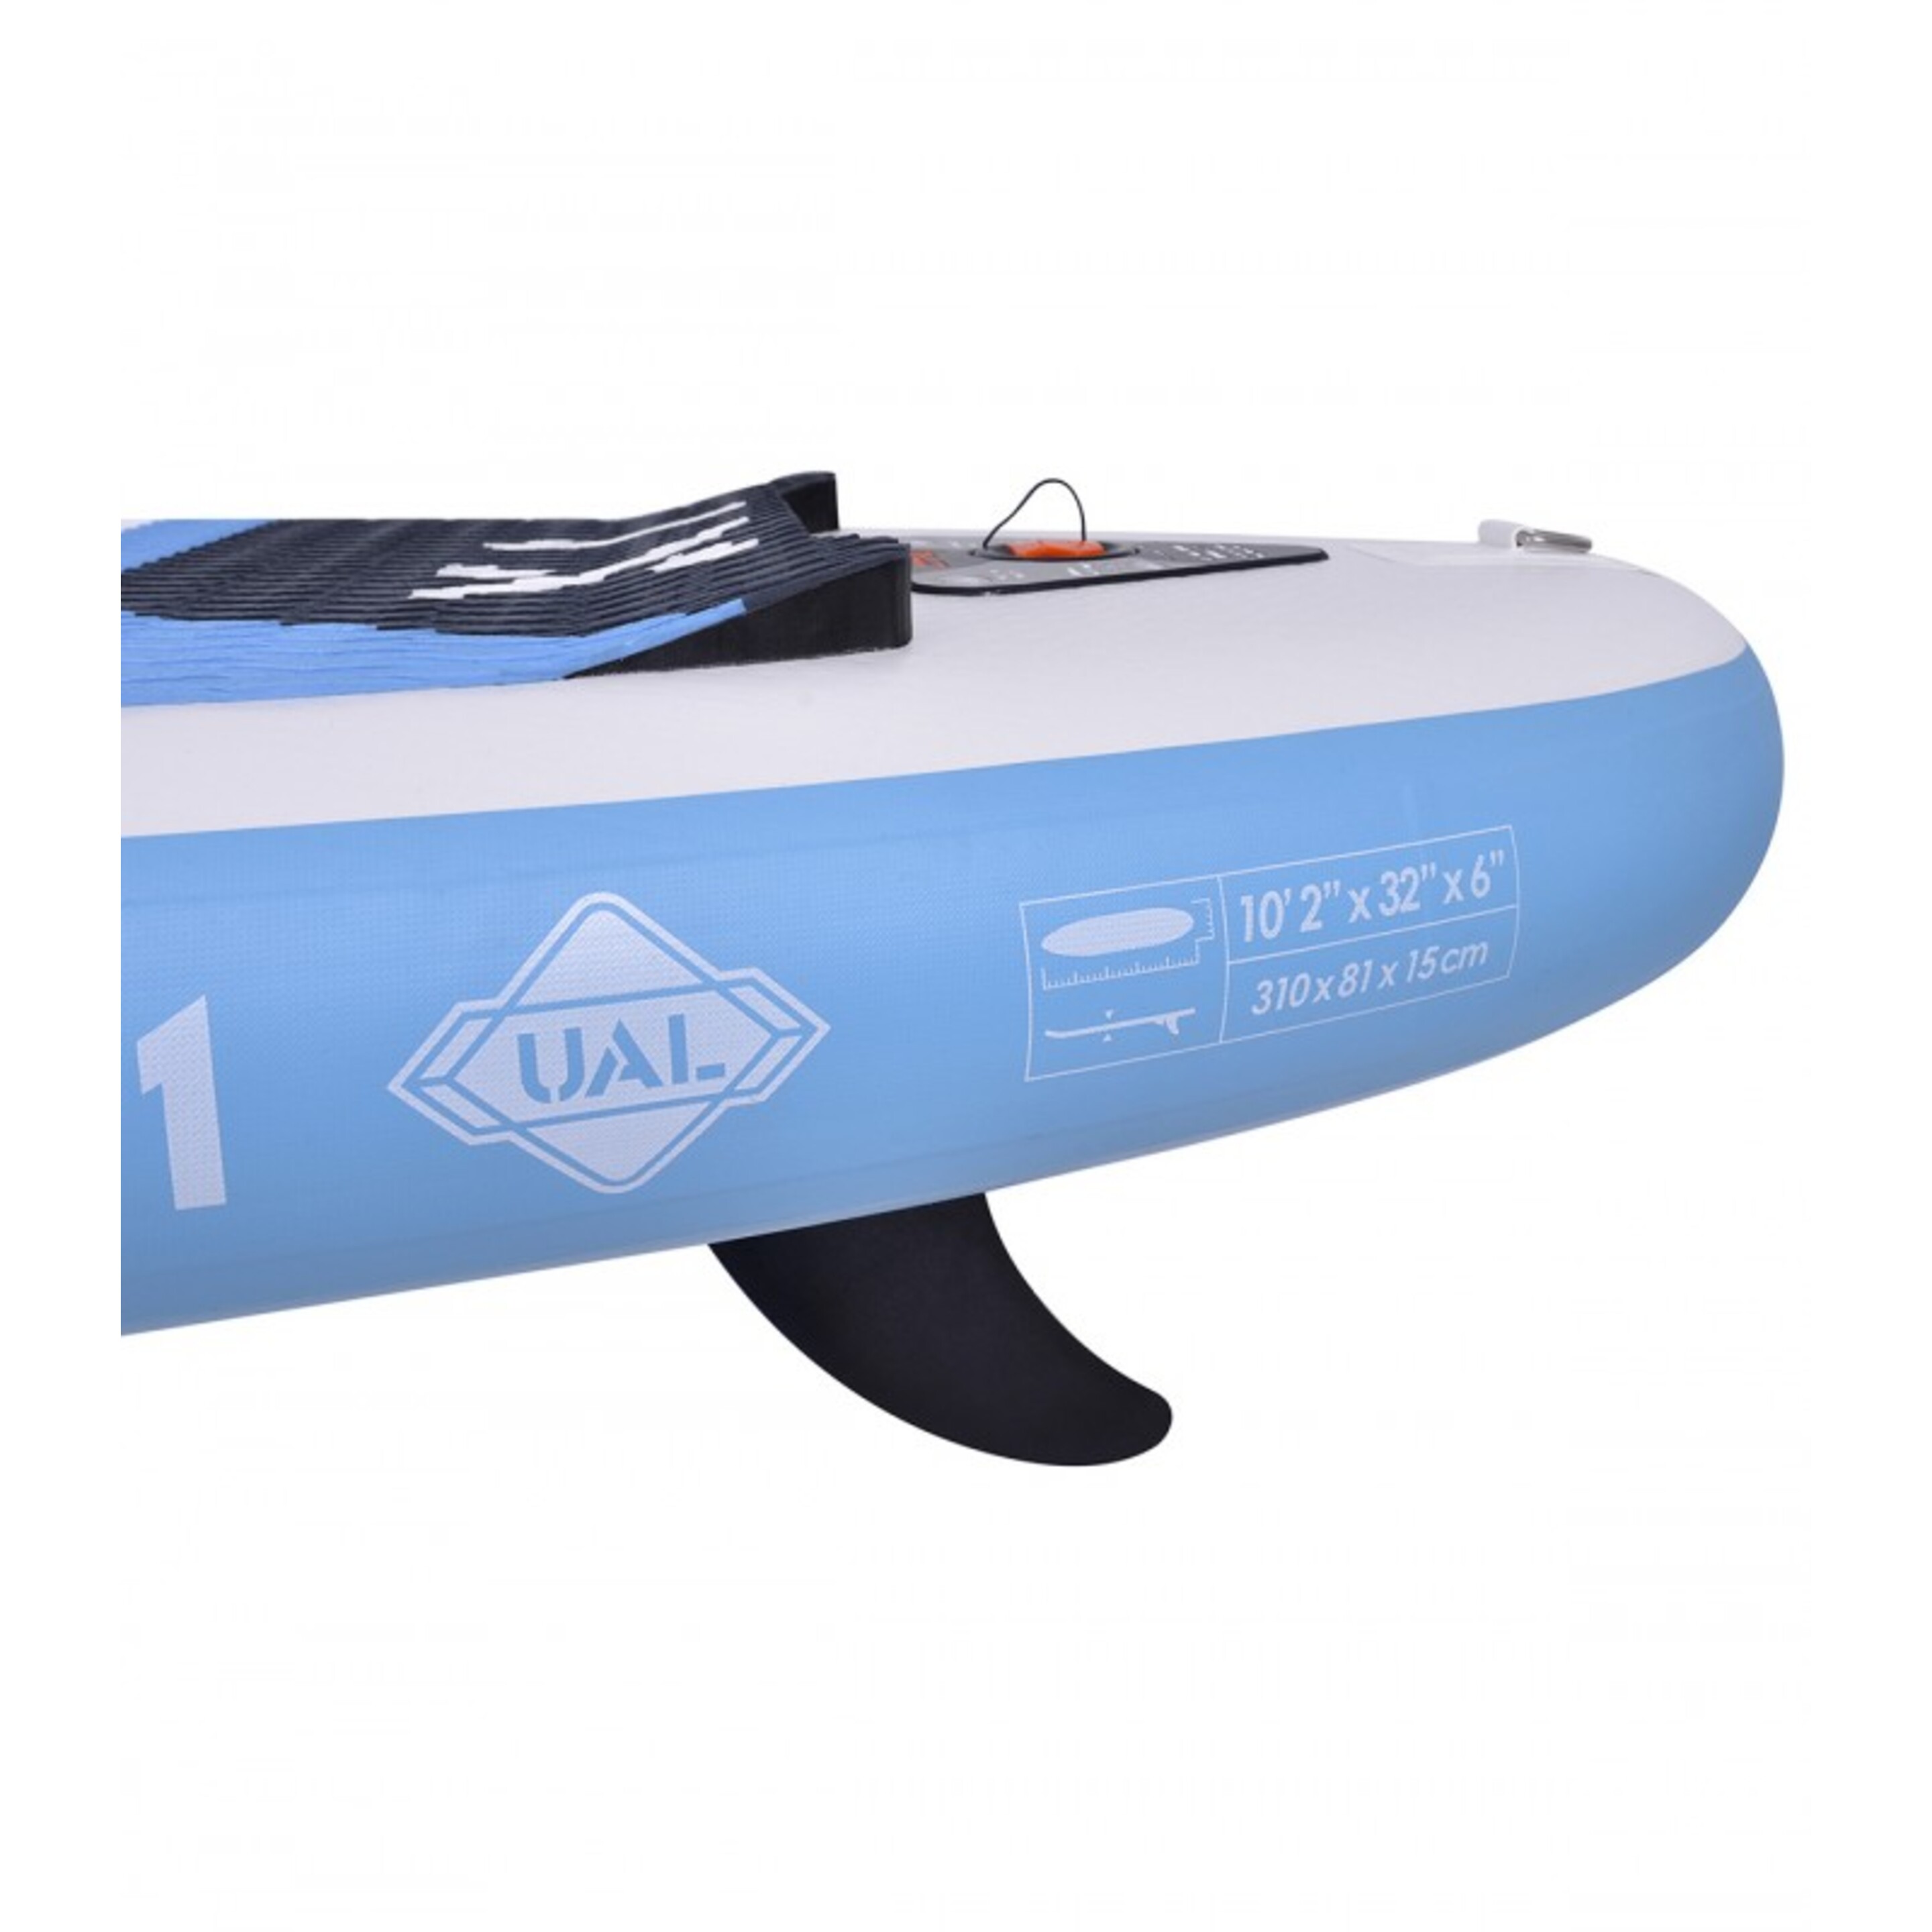 Paddle Surf Zray X1 Combo 2022